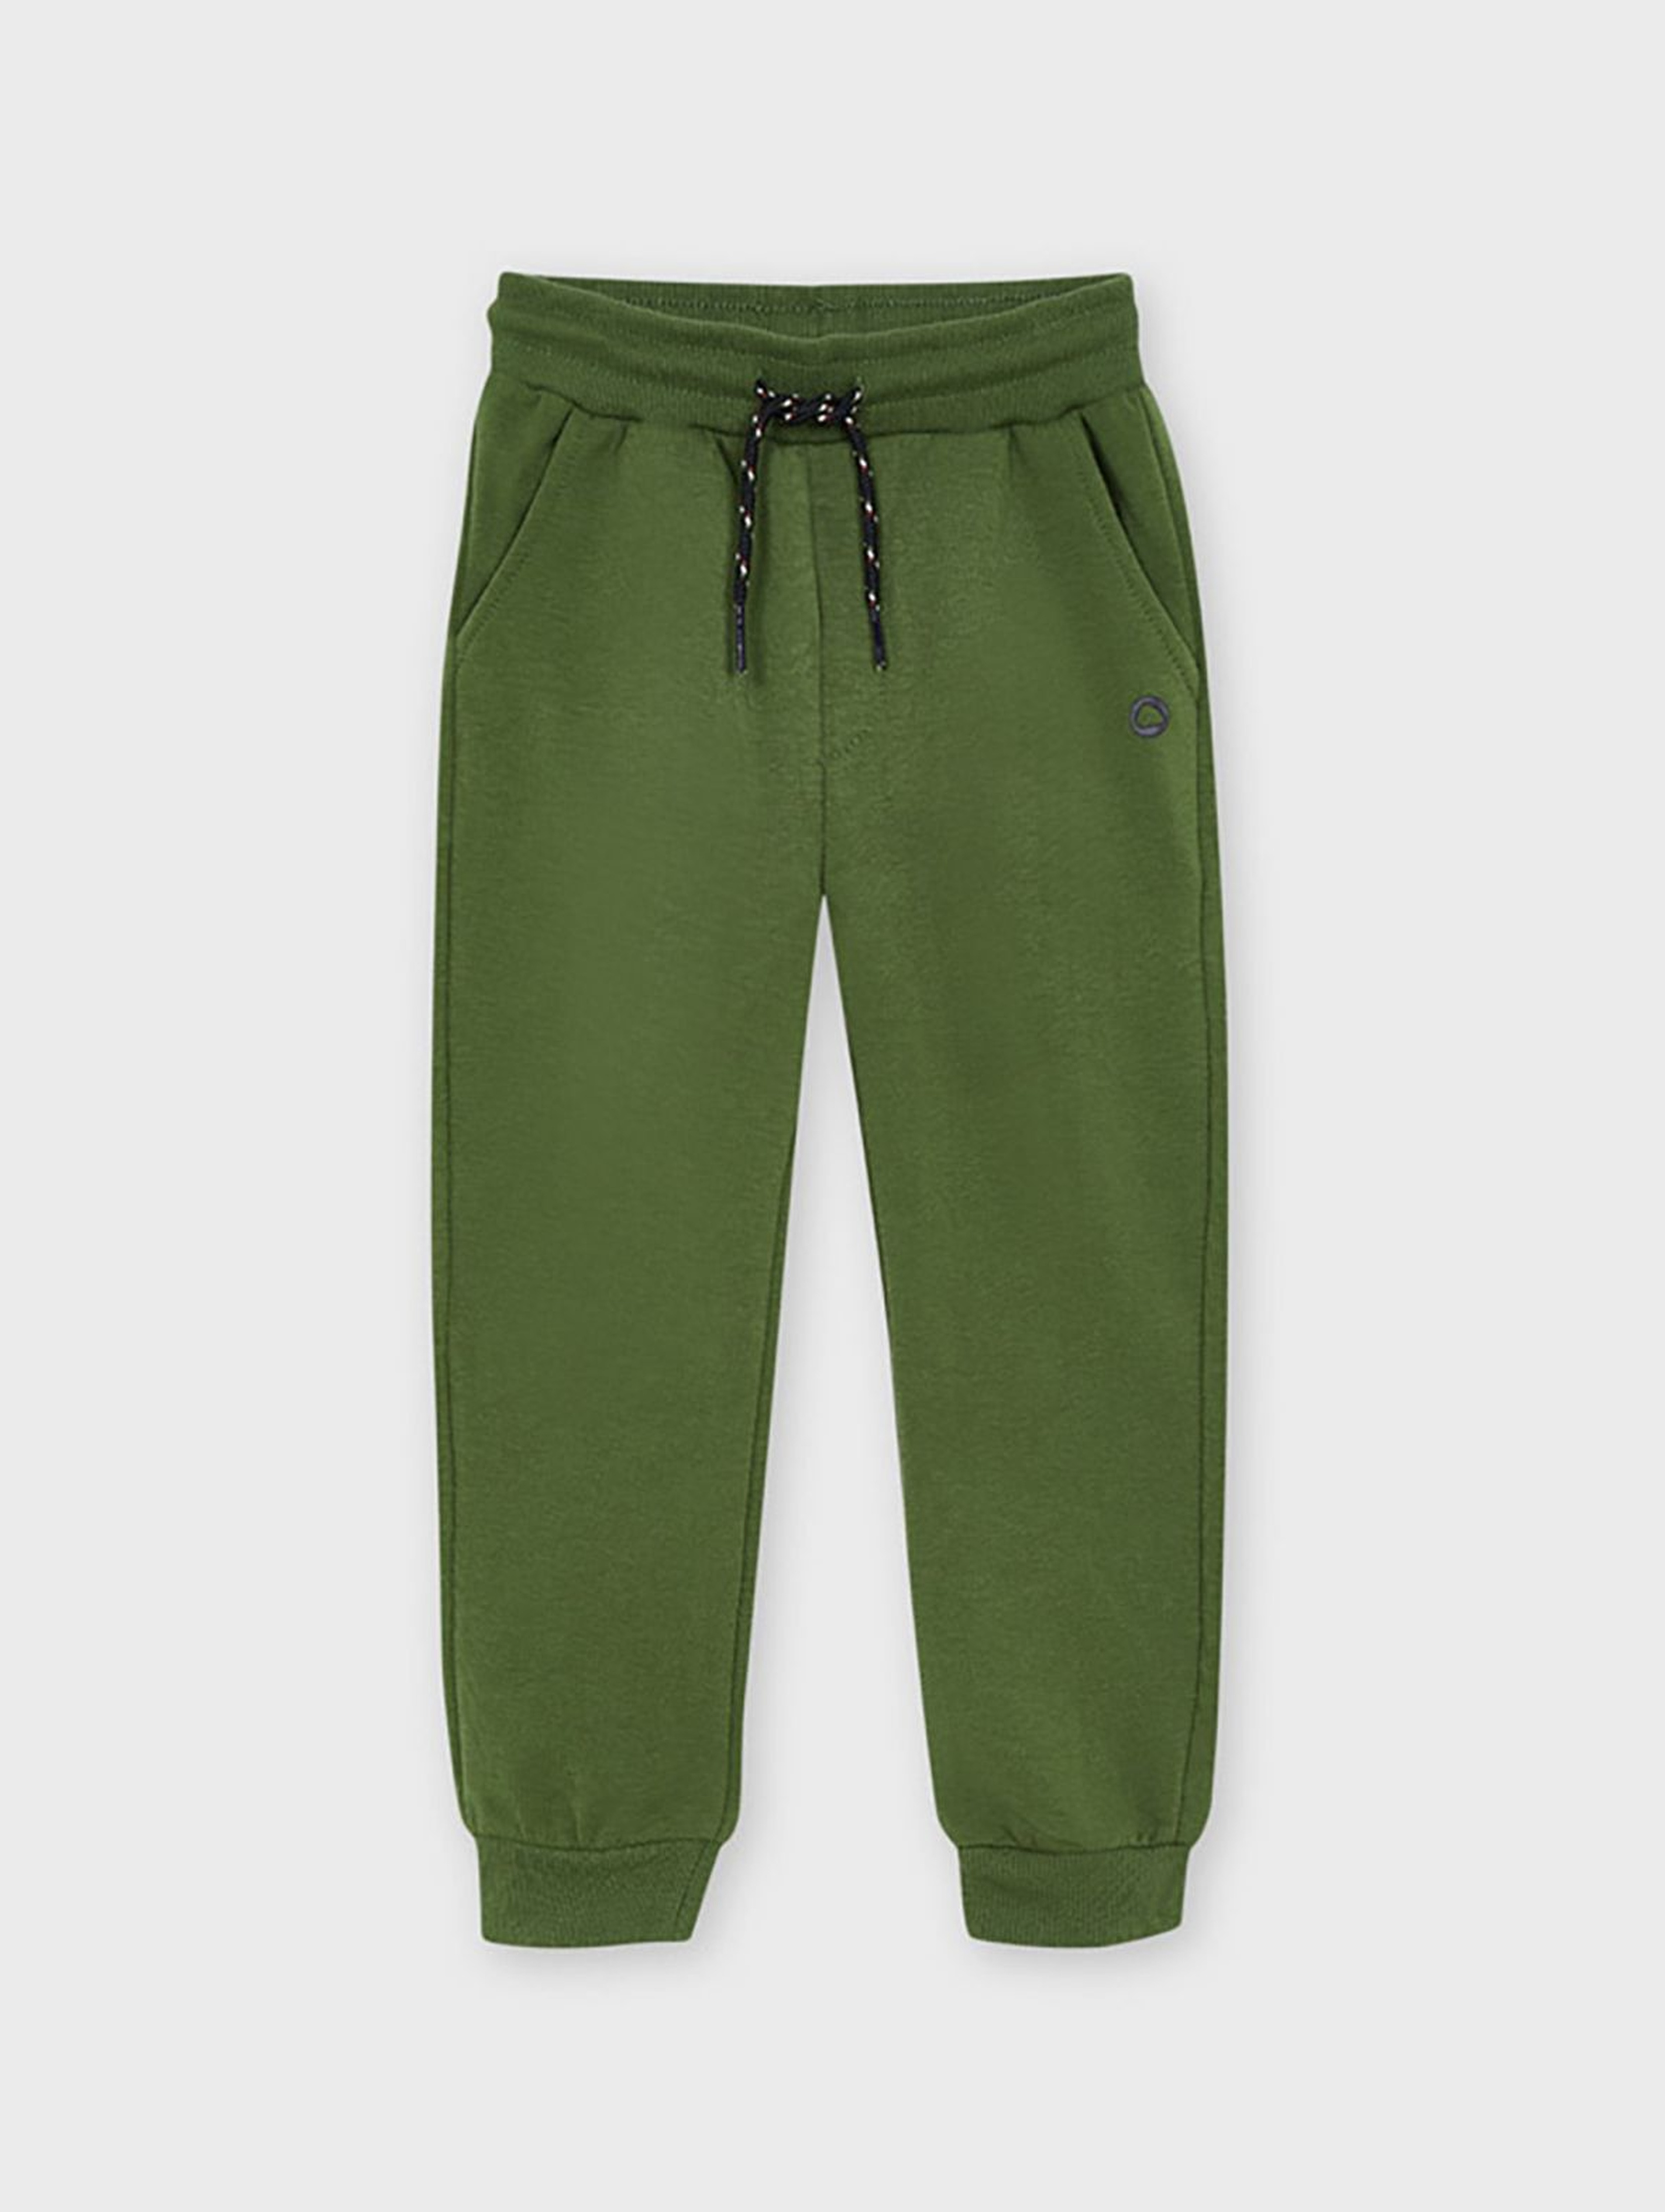 Długie chłopięce spodnie dresowe Mayoral - zielone